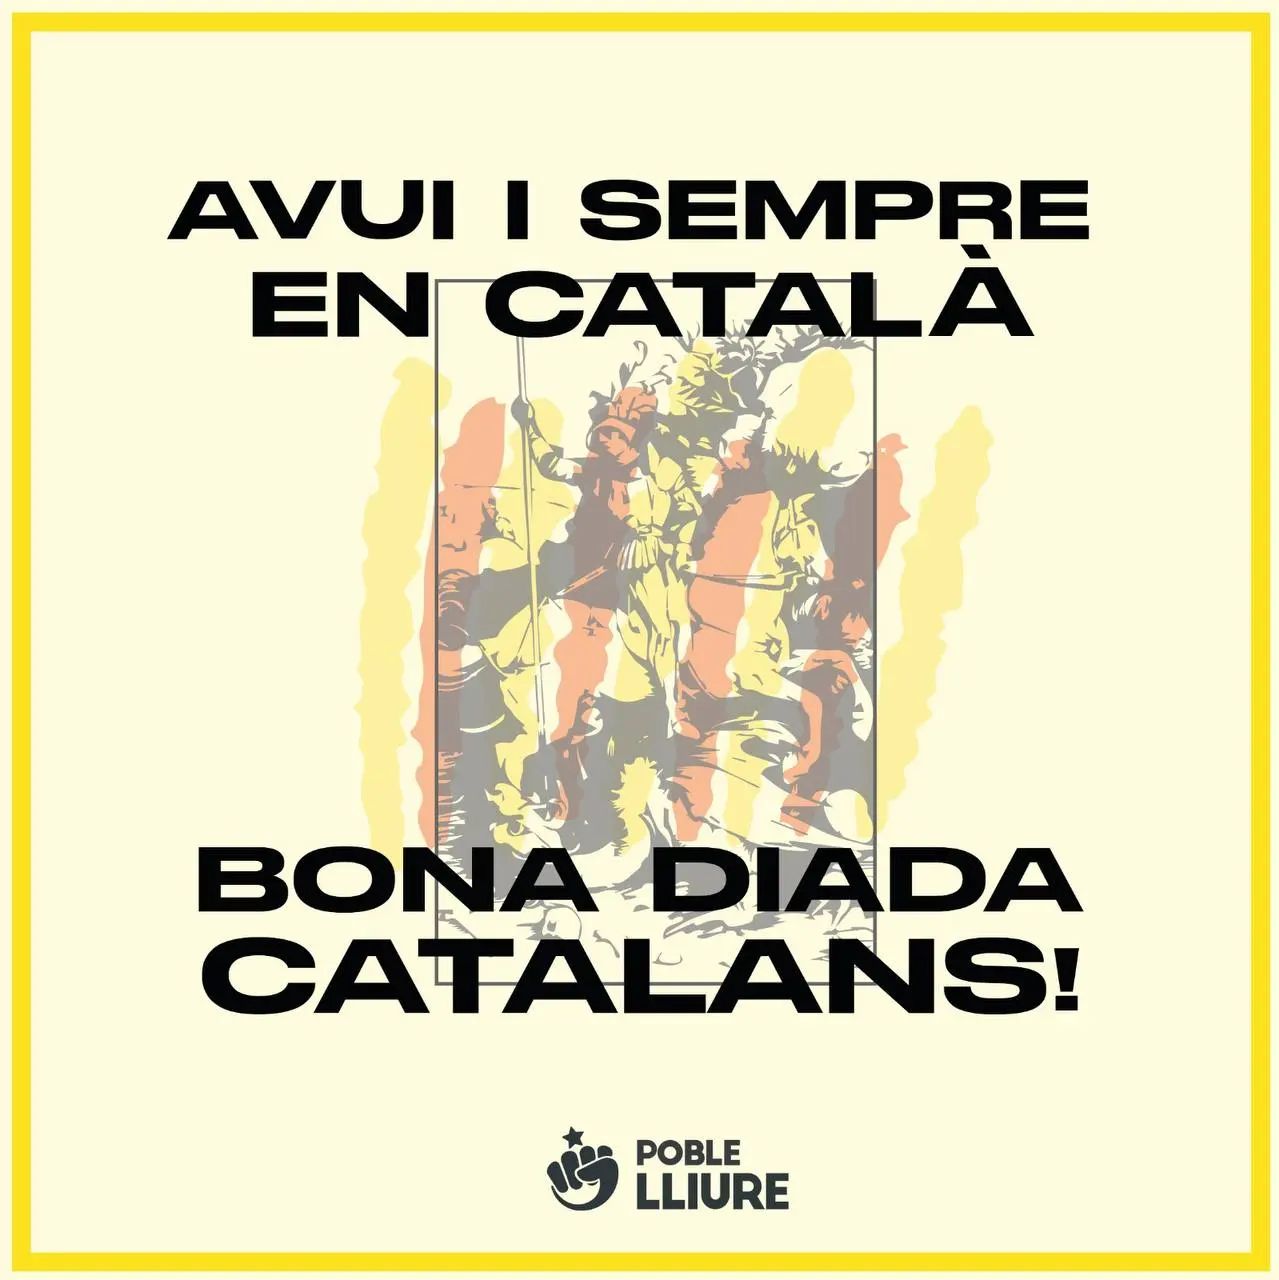 🌹📚 Sant Jordi | Bona diada Catalans!

AVUI I SEMPRE EN CATALÀ